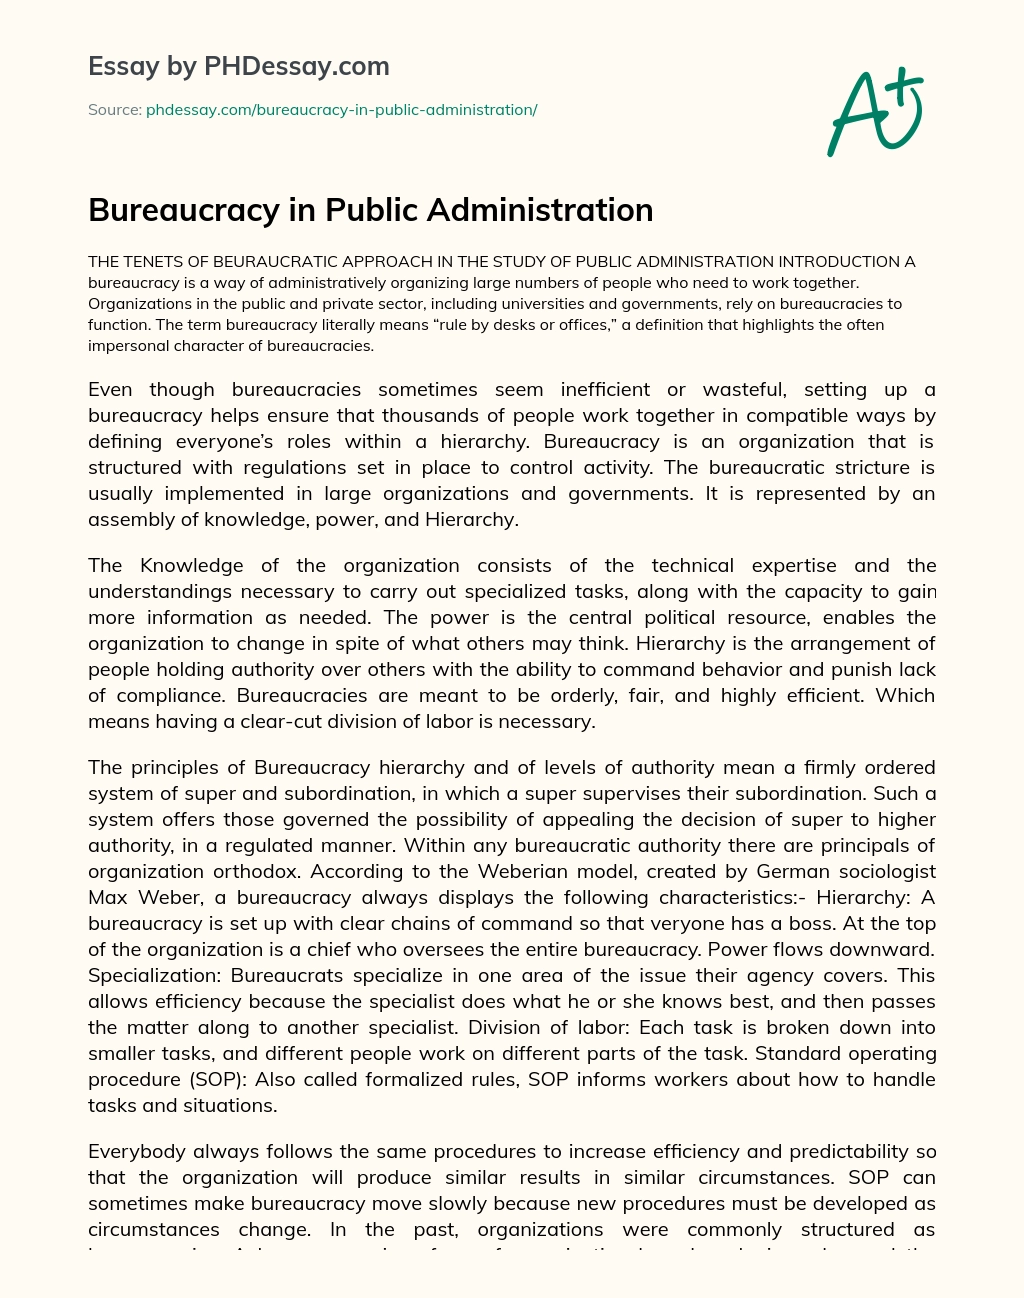 Bureaucracy in Public Administration essay